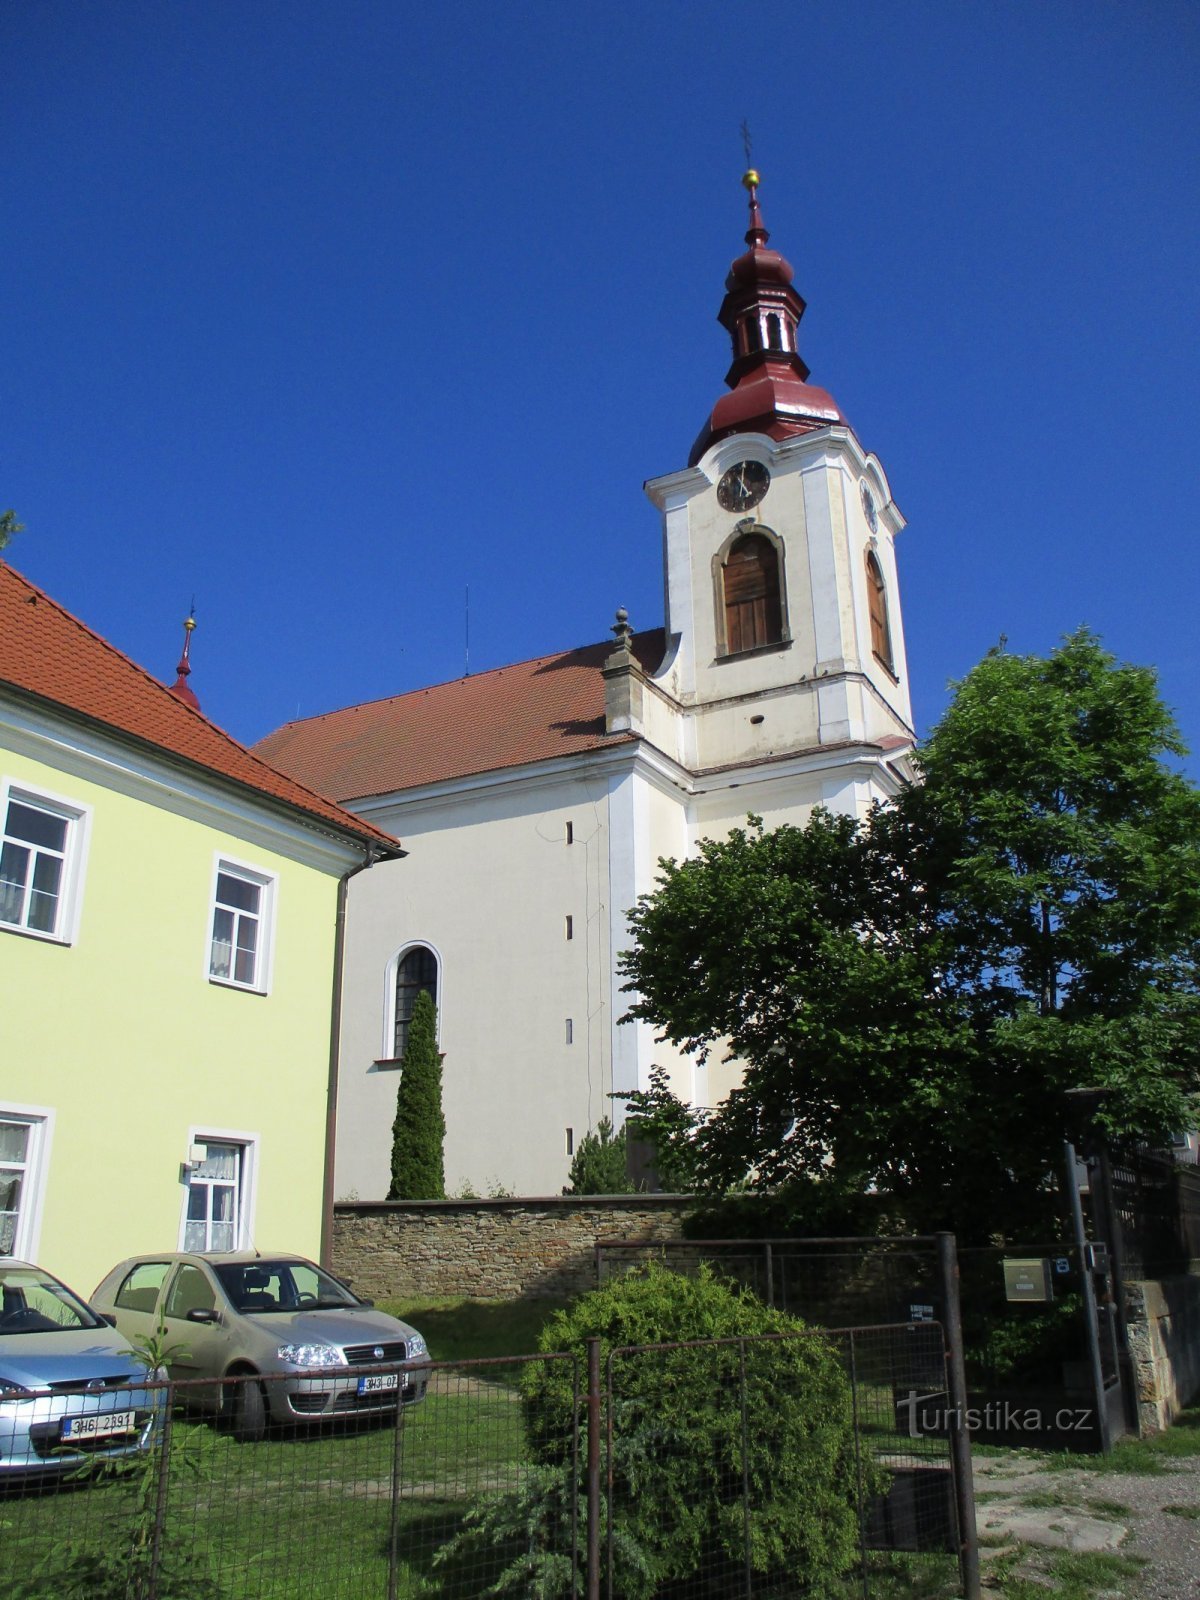 Église de St. Catherine, vierges et martyres (České Meziříčí)